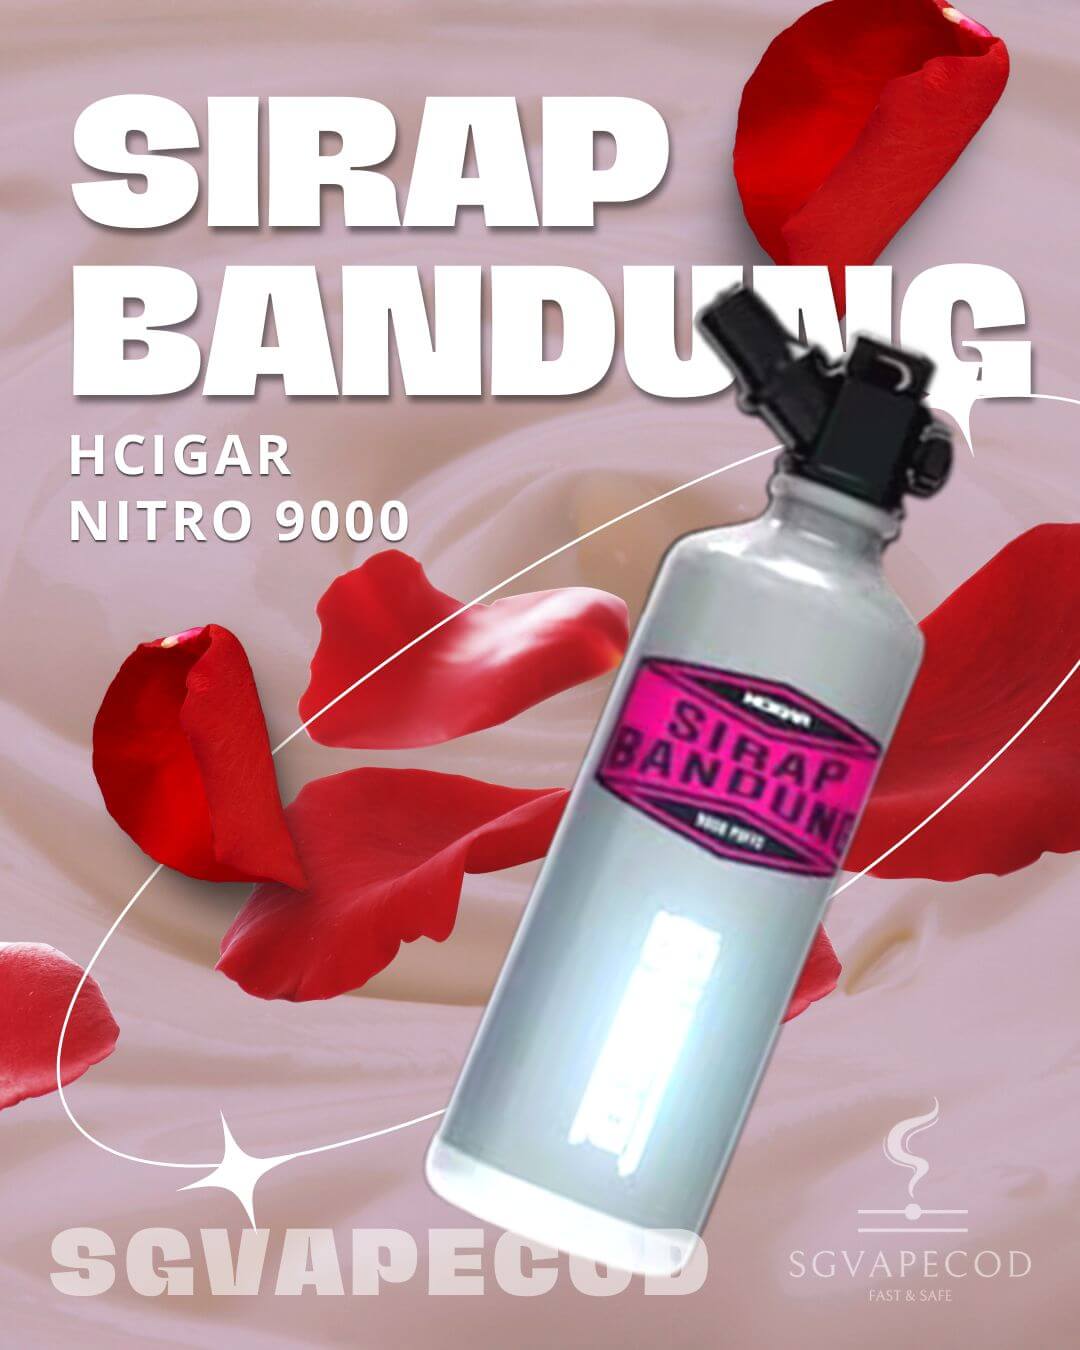 Hcigar Nitro 9000-Sirap Bandung